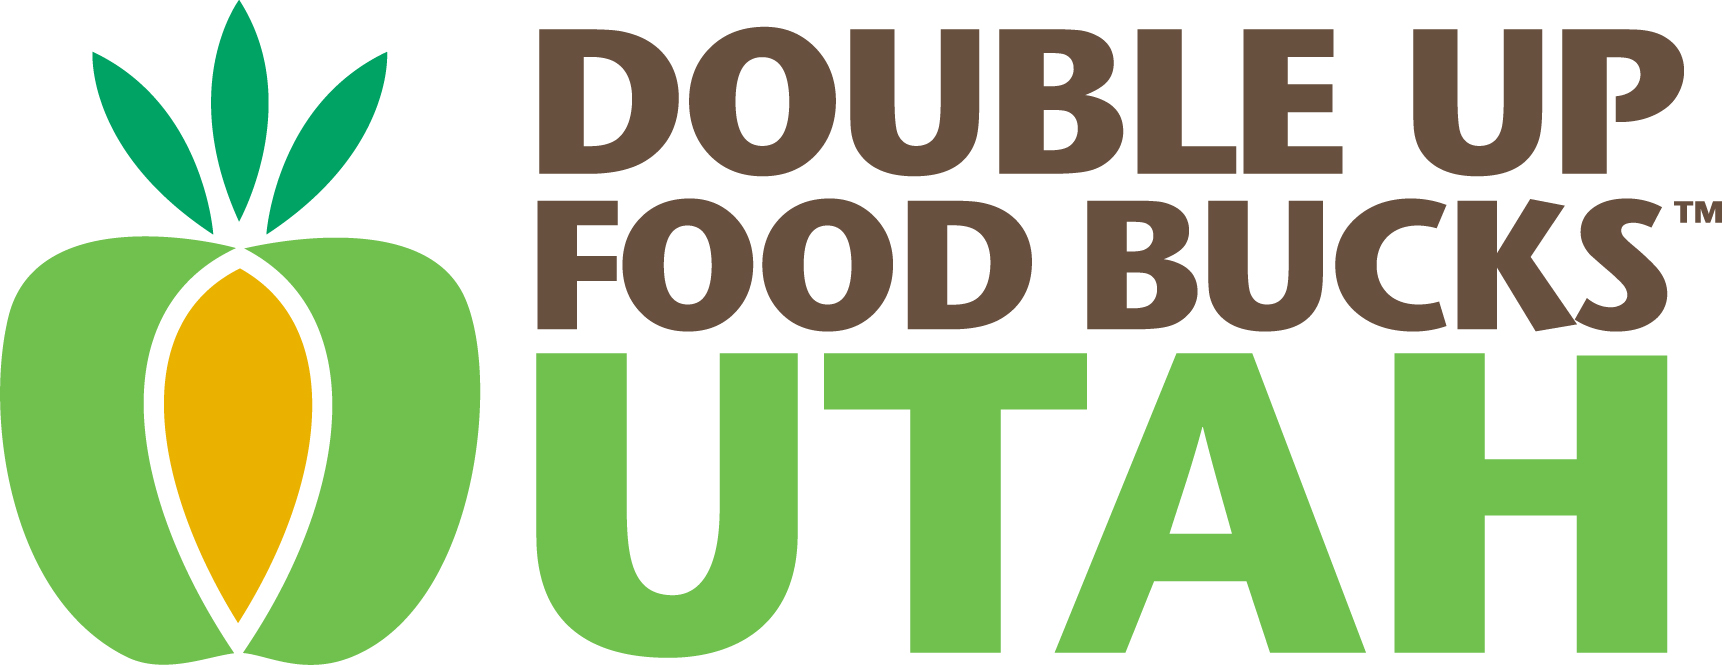 Double Up Food Bucks logo